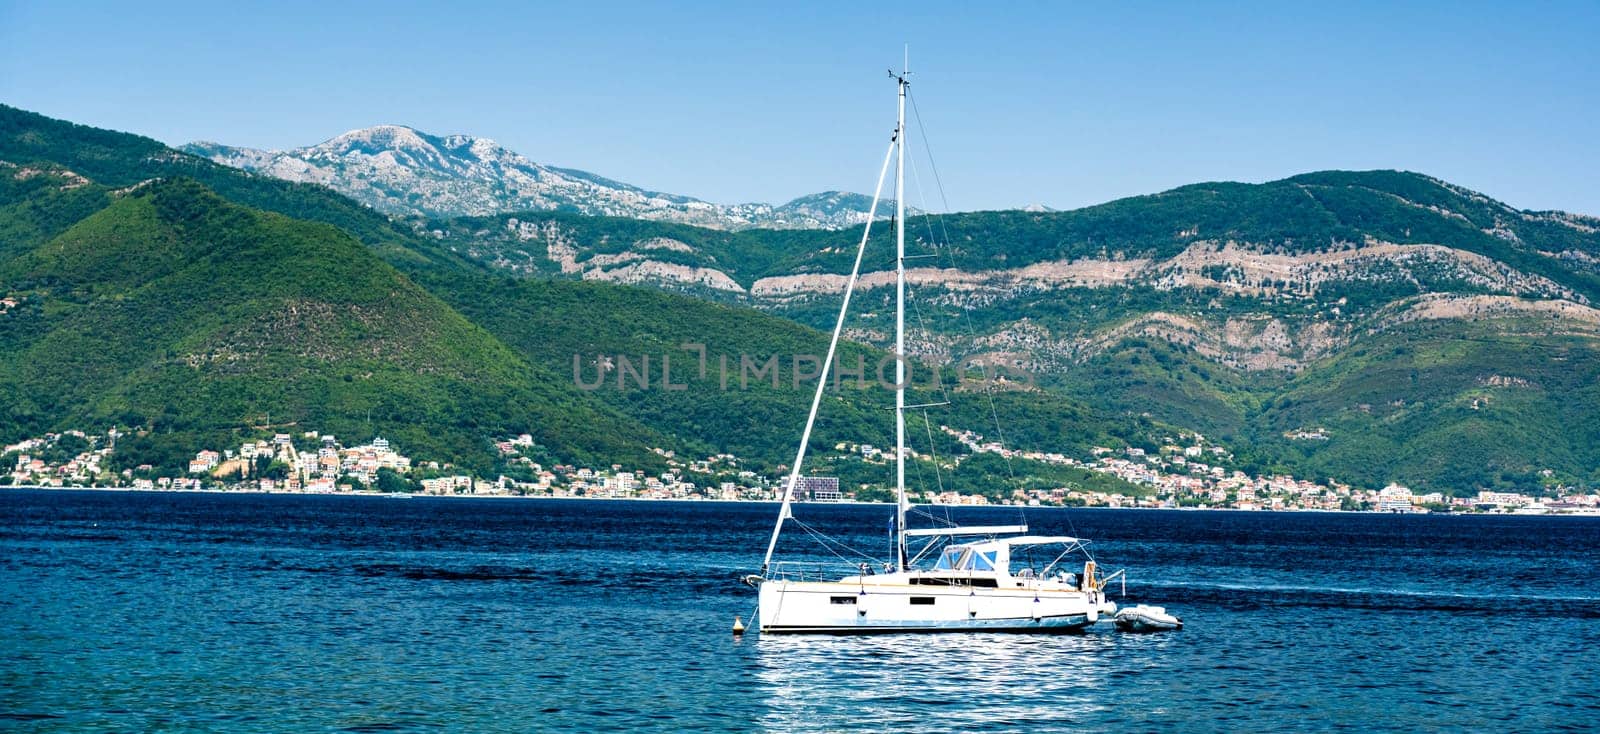 Boat in Adriatic sea, Montenegro by GekaSkr